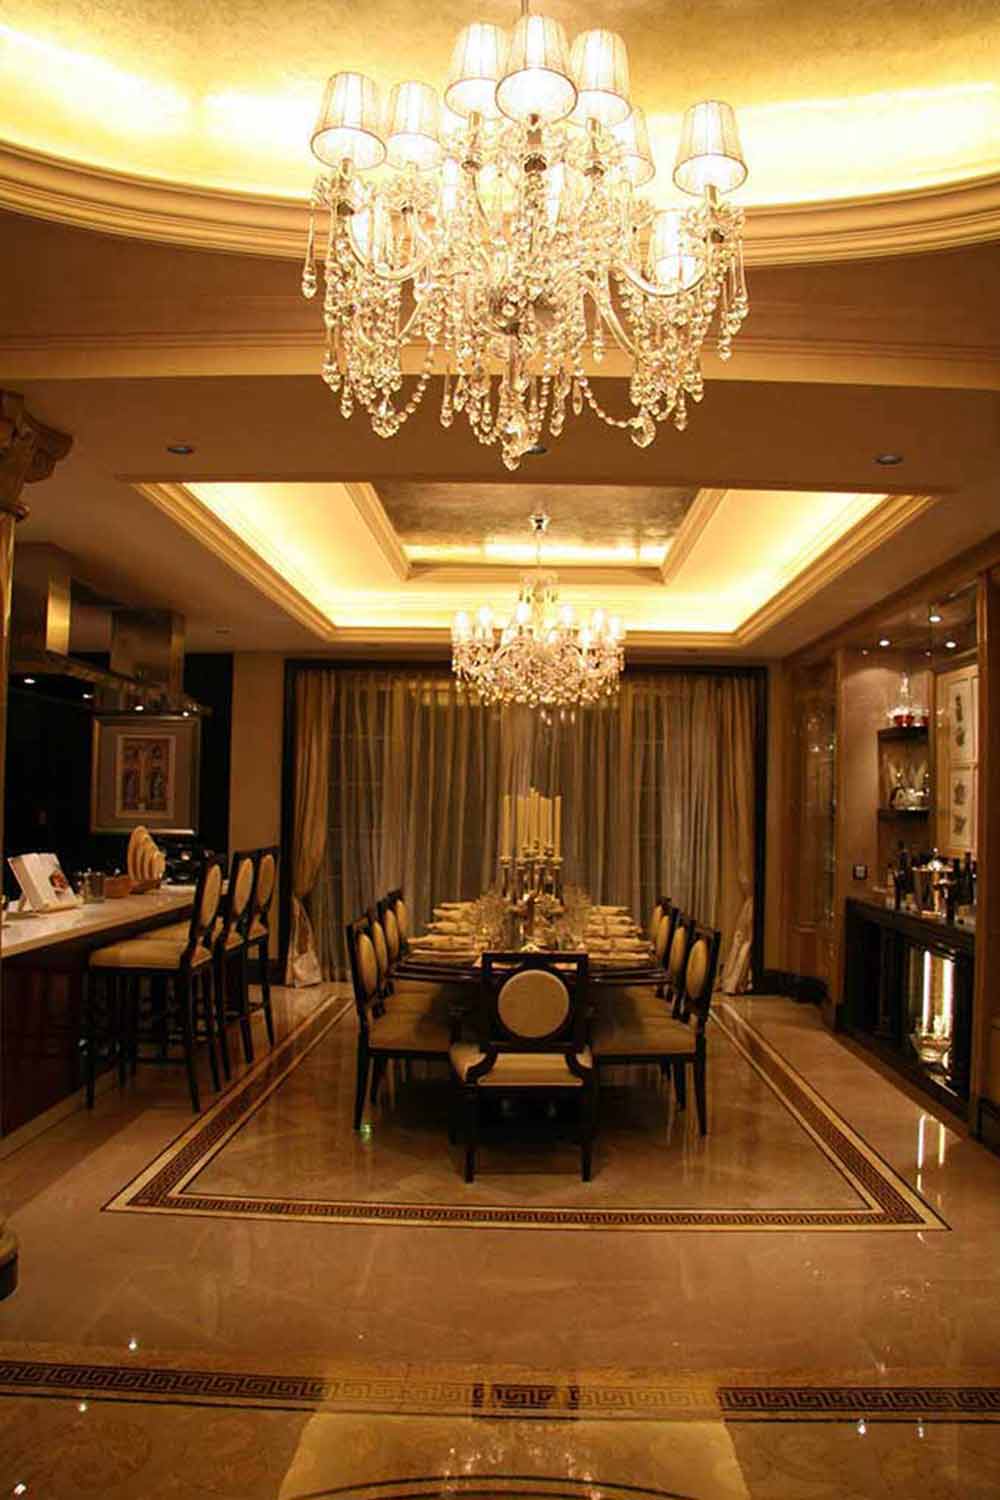 光洁的地板流光溢彩，欧美风格水晶吊灯悬挂在餐桌正上方，明亮高雅。